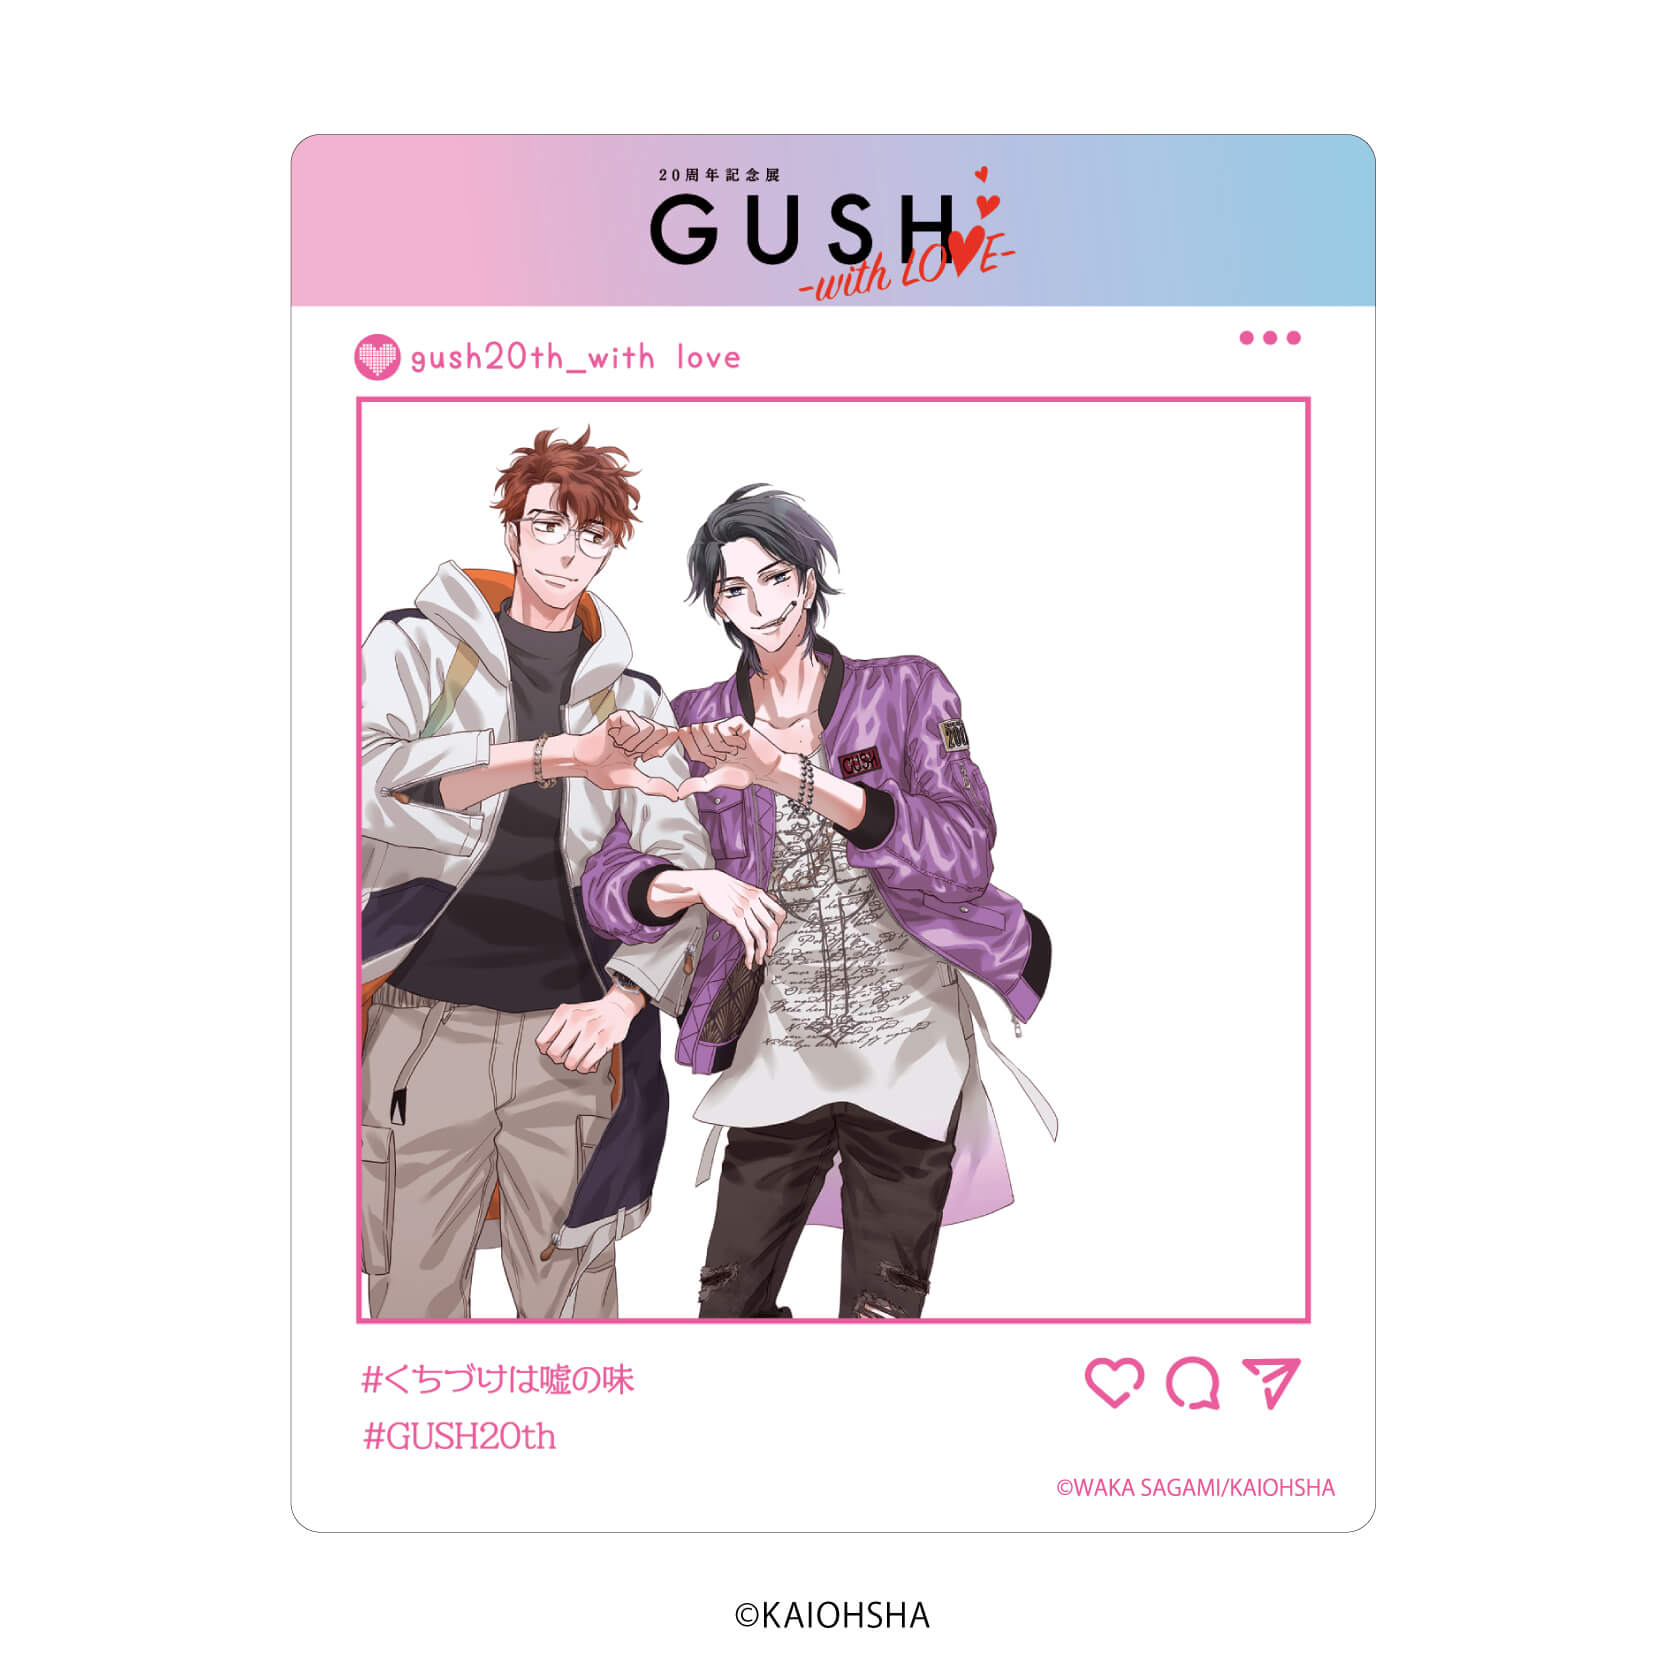 アクリルカード「GUSH20周年記念展-with LOVE-」02/ブラインド(8種)(公式&描き下ろしイラスト)